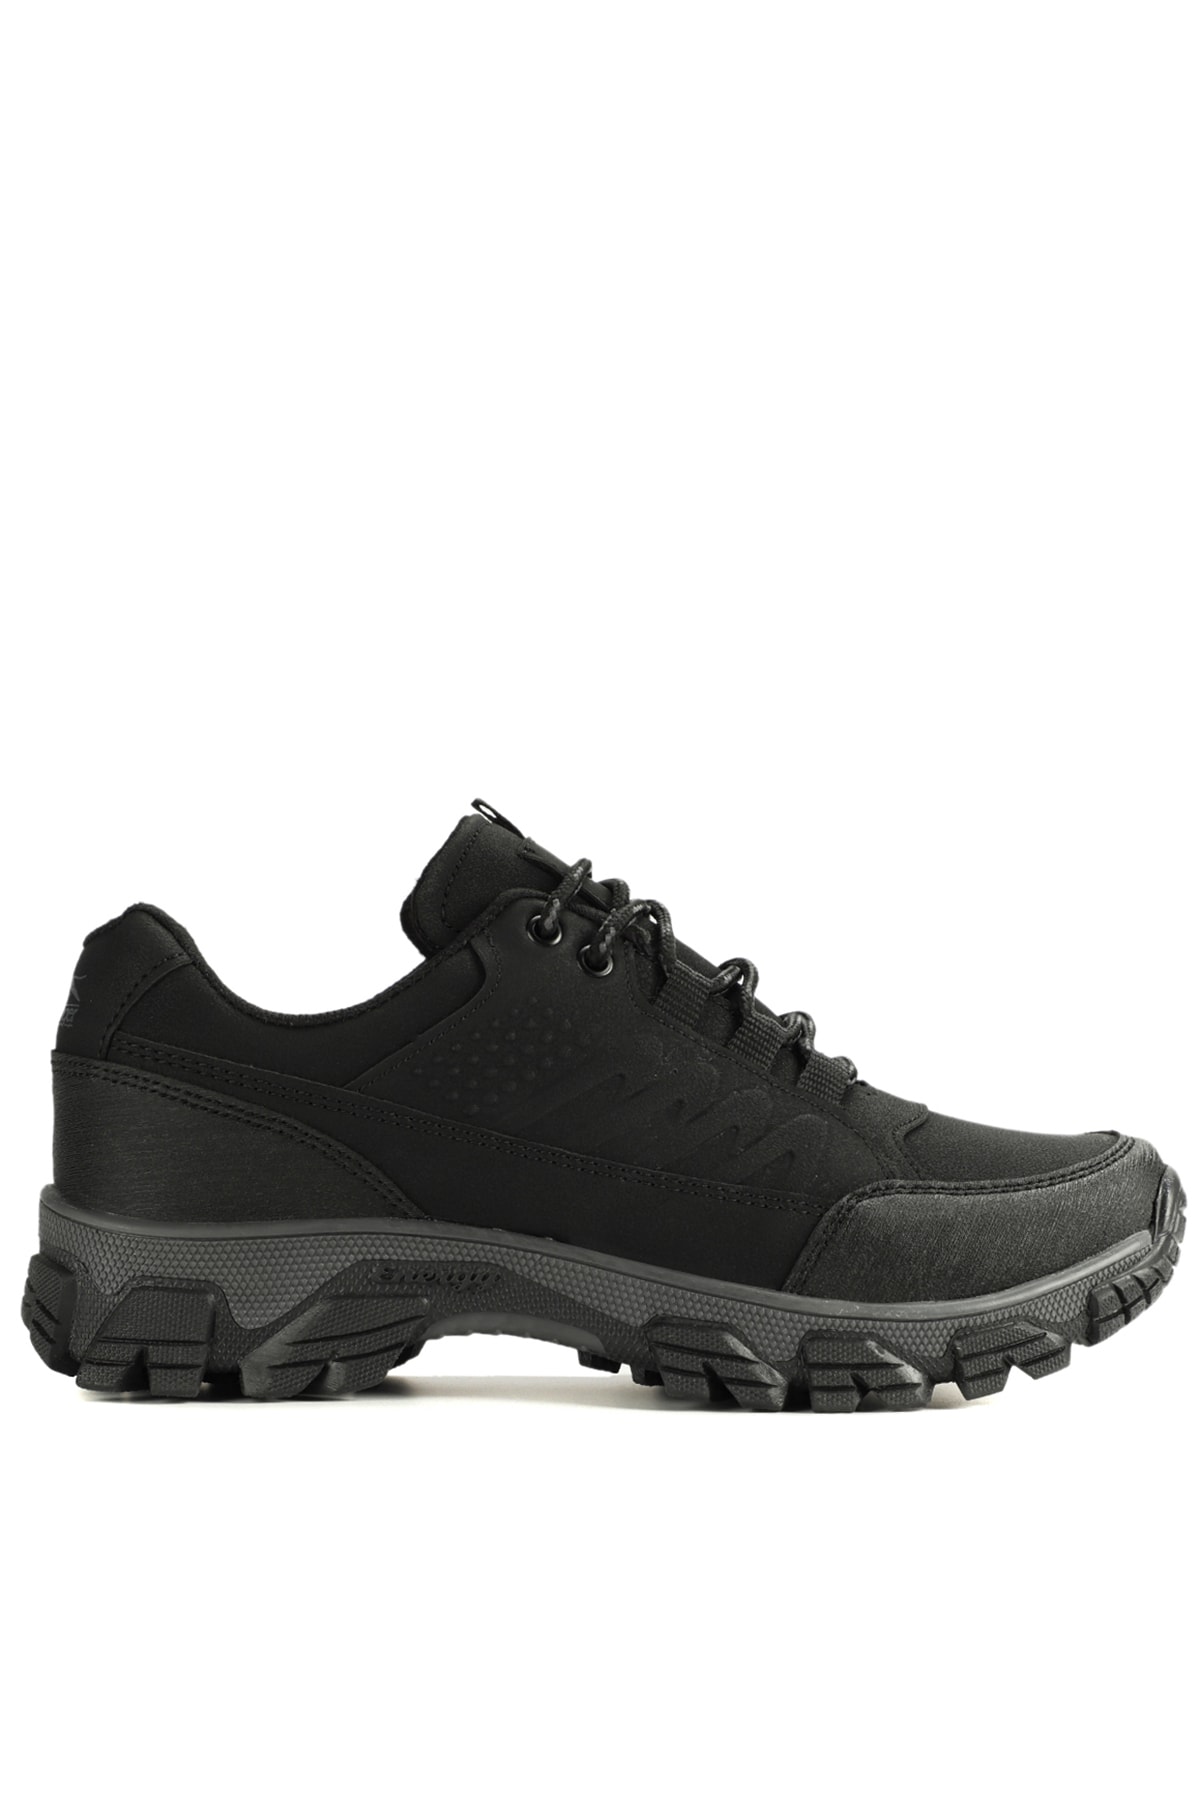 Slazenger Adark Outdoor Boots Men's Shoes Black